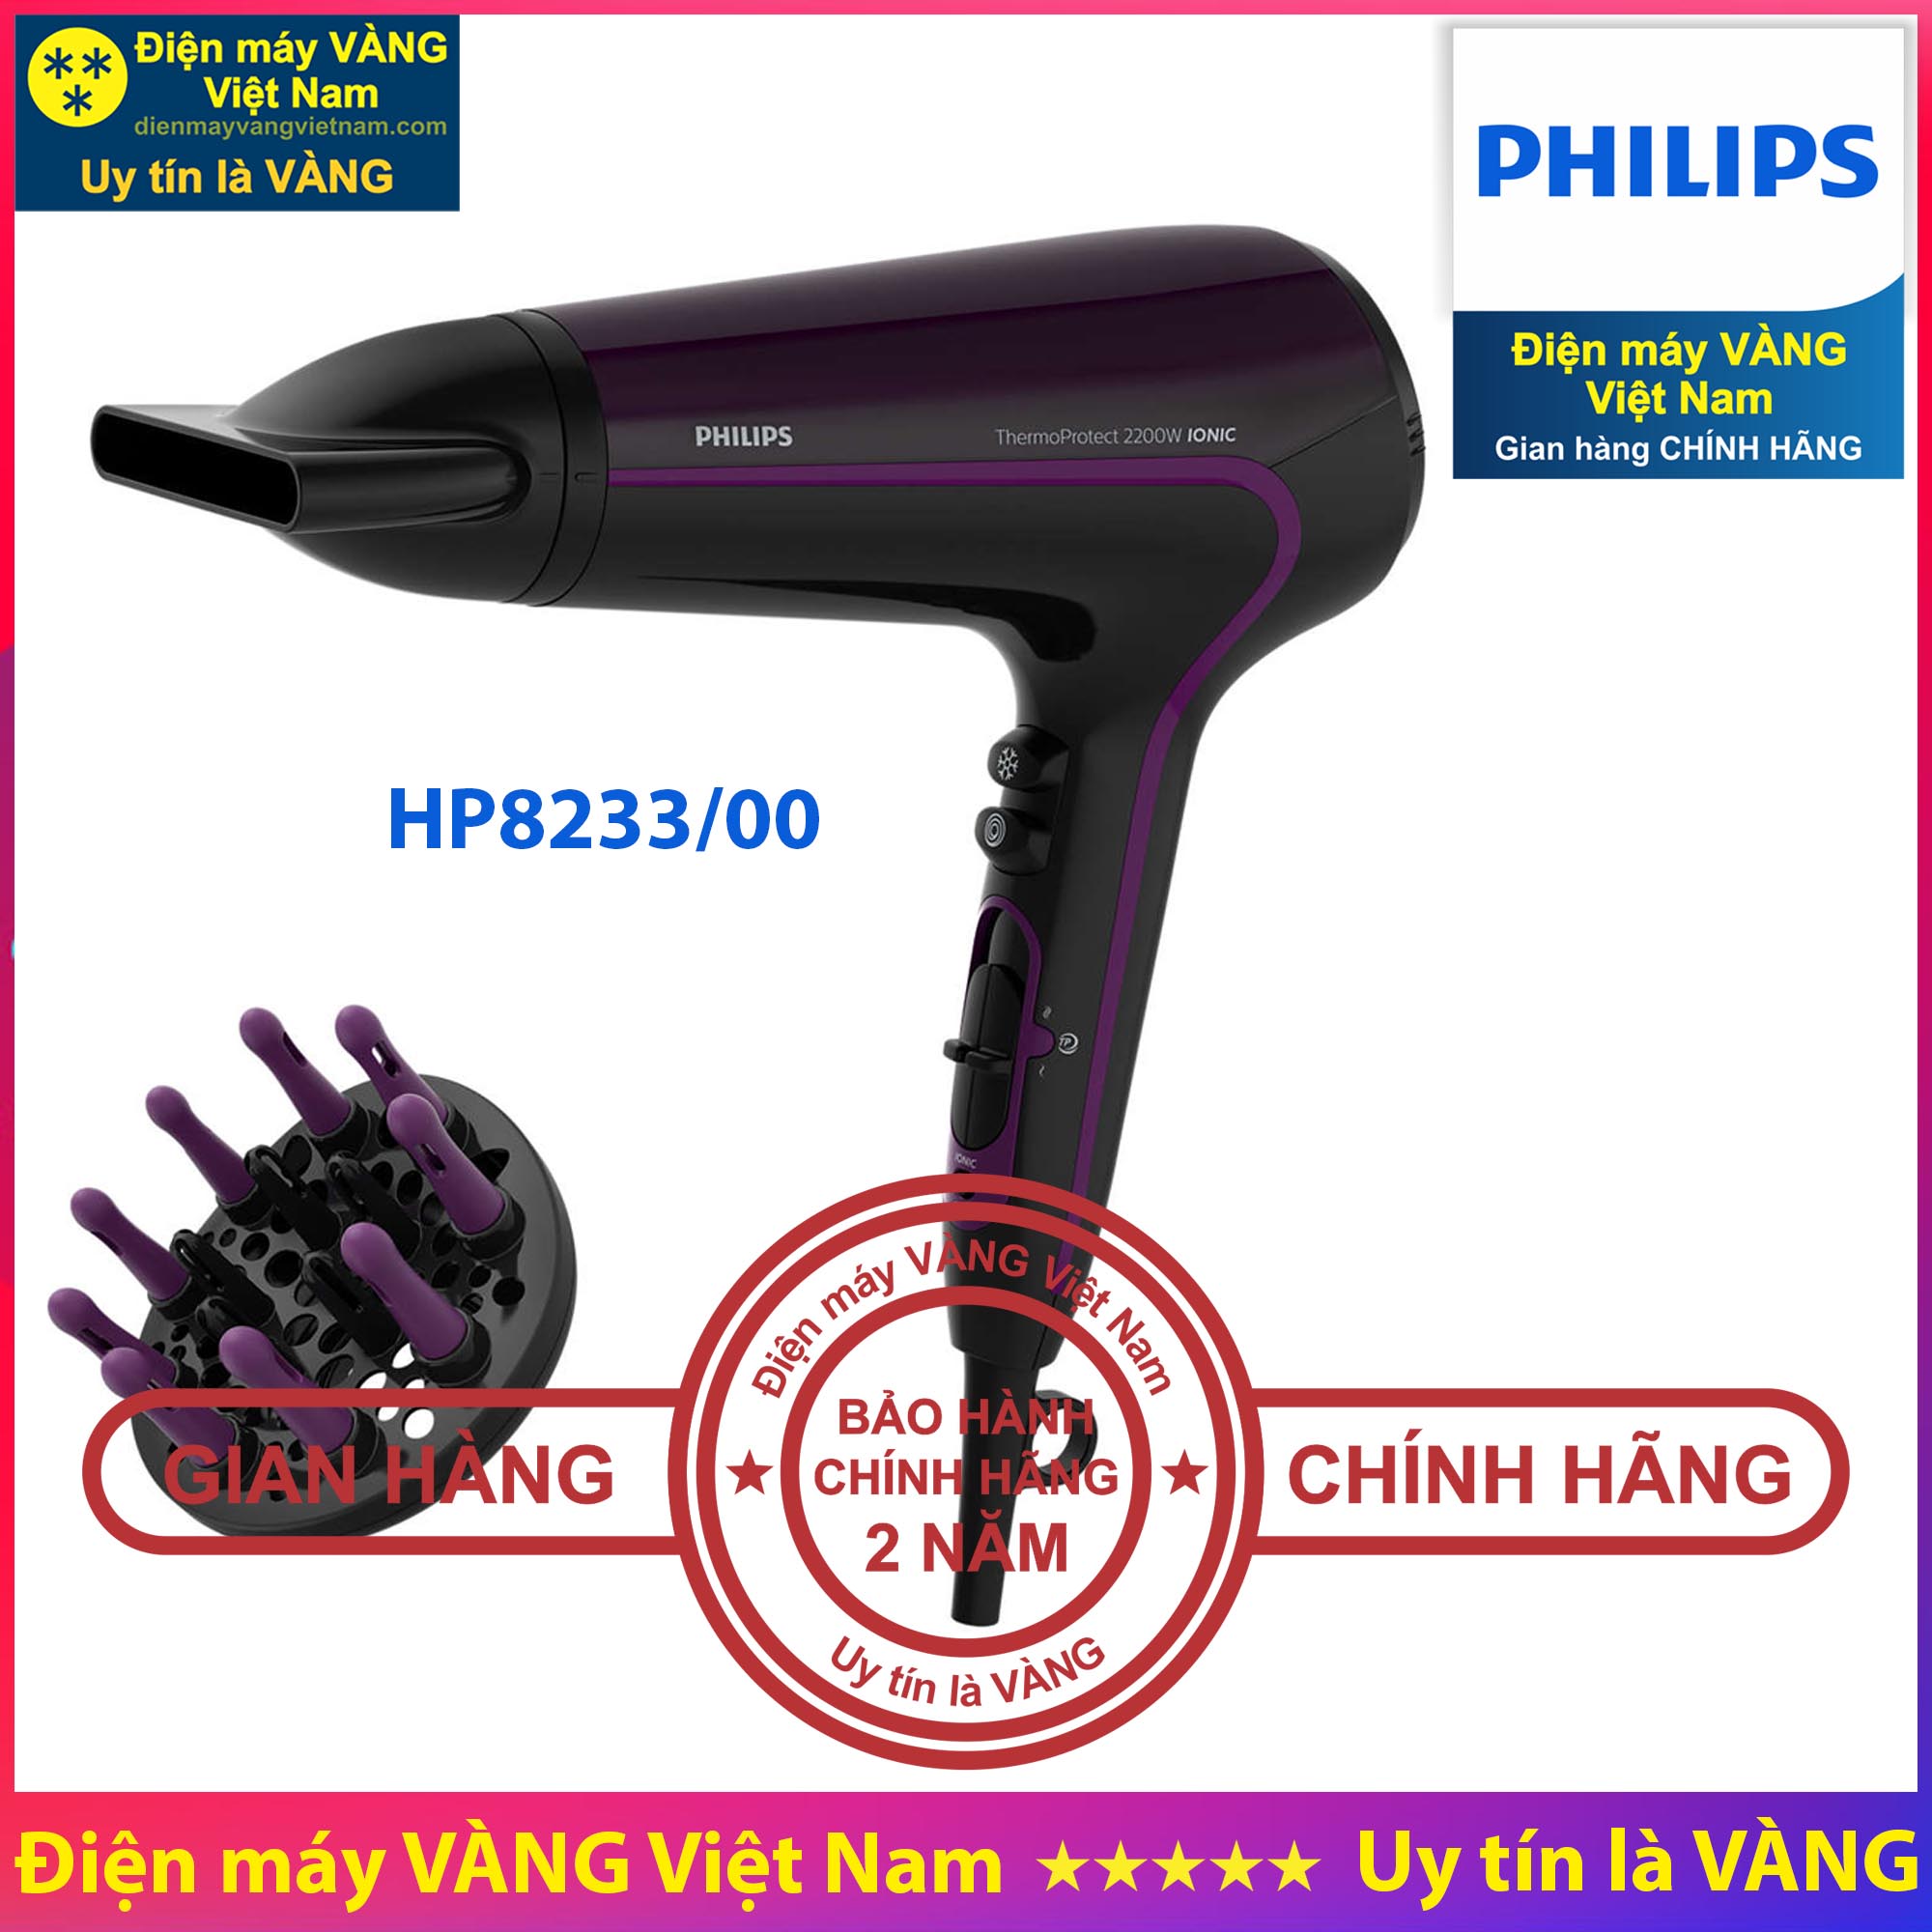 Máy sấy tóc ion cao cấp Philips HP8233 - Hàng chính hãng Bảo hành 2 năm